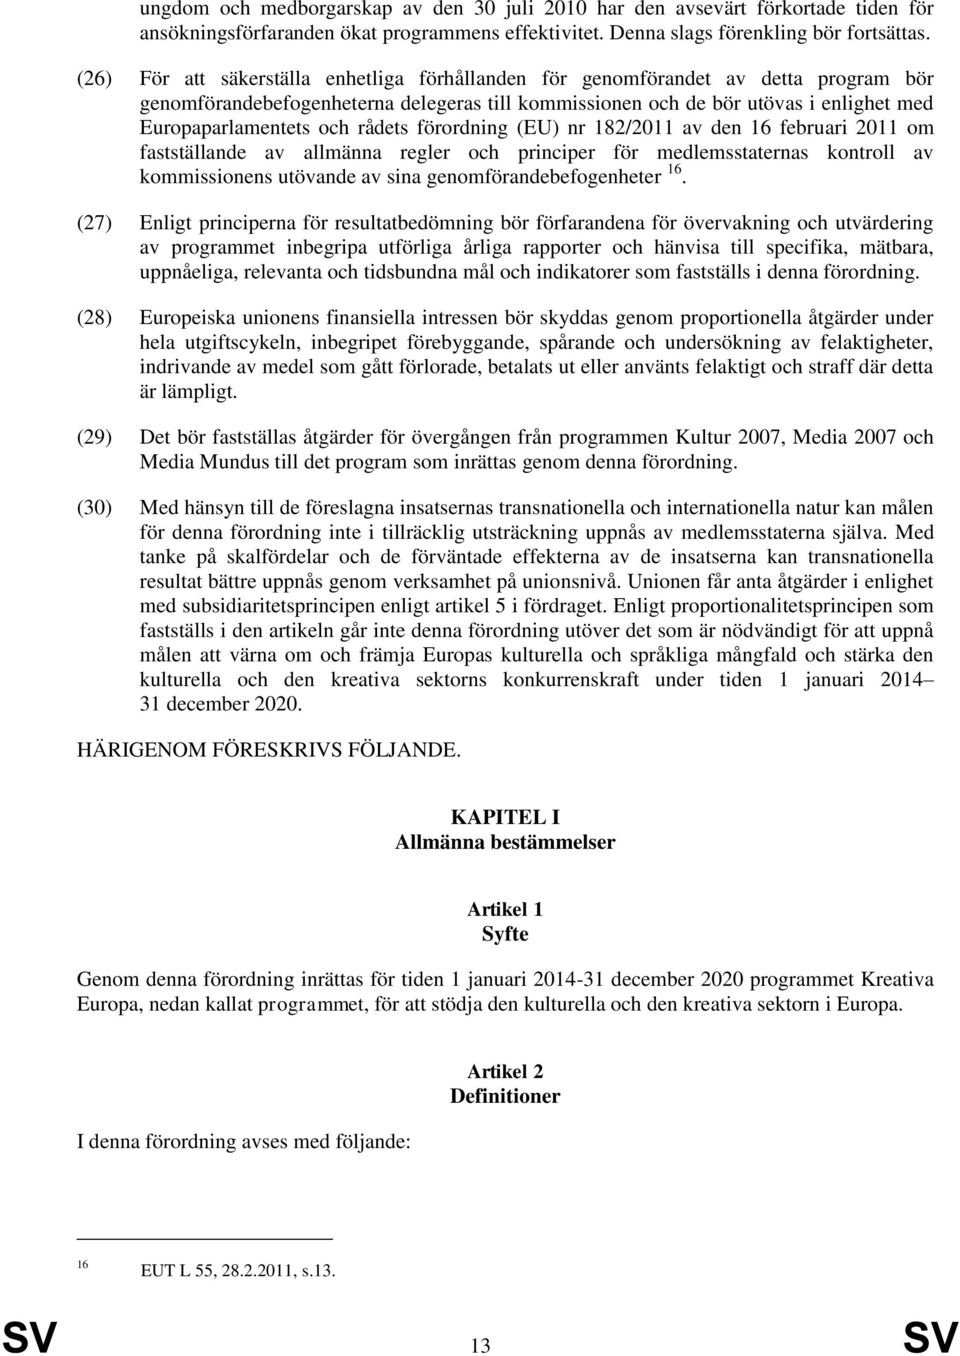 rådets förordning (EU) nr 182/2011 av den 16 februari 2011 om fastställande av allmänna regler och principer för medlemsstaternas kontroll av kommissionens utövande av sina genomförandebefogenheter